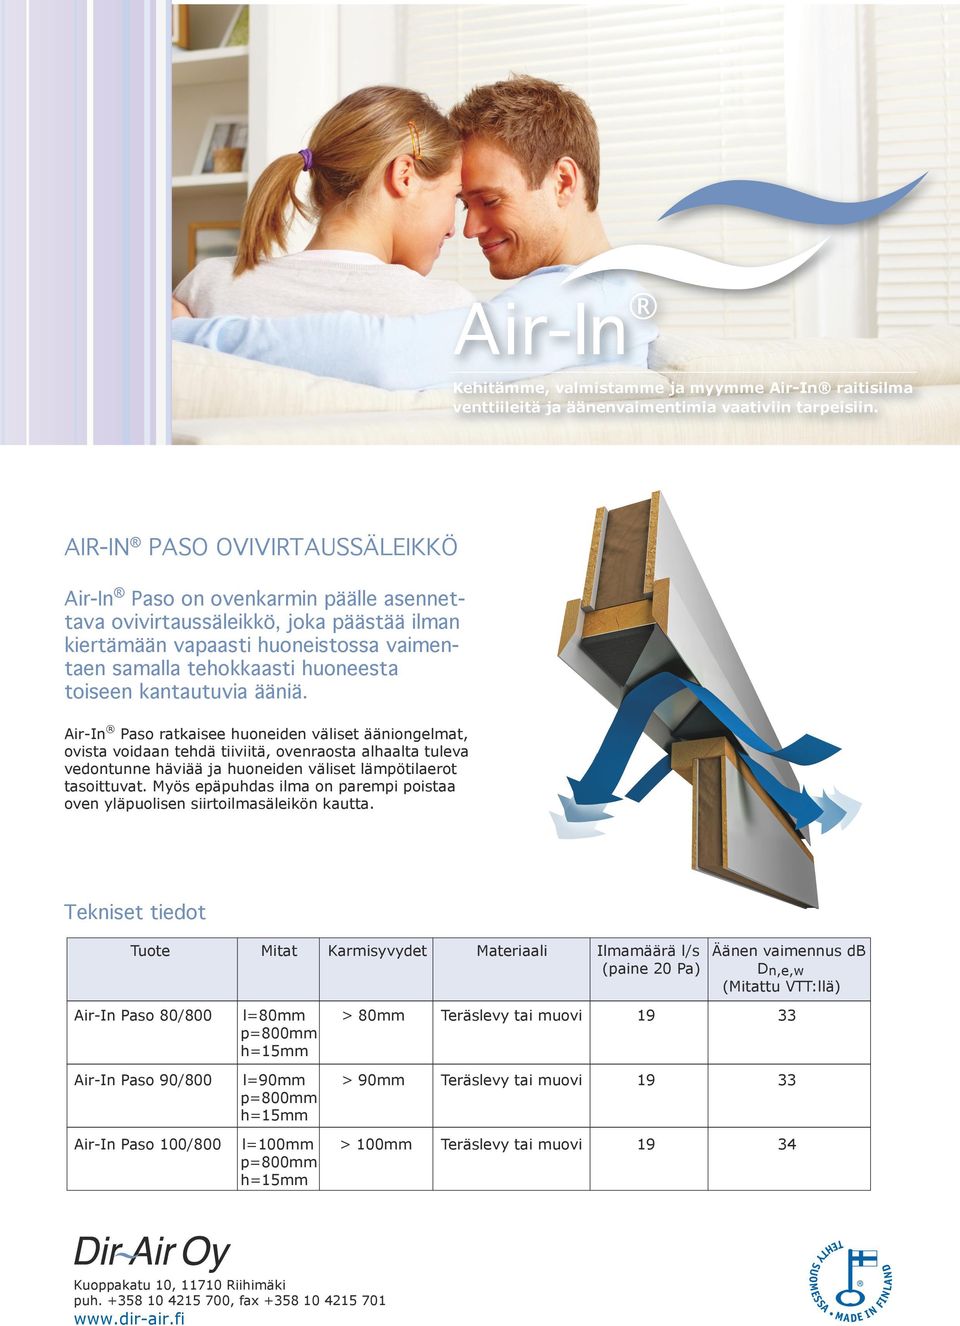 Air-In Paso ratkaisee huoneiden väliset ääniongelmat, ovista voidaan tehdä tiiviitä, ovenraosta alhaalta tuleva vedontunne häviää ja huoneiden väliset lämpötilaerot tasoittuvat.